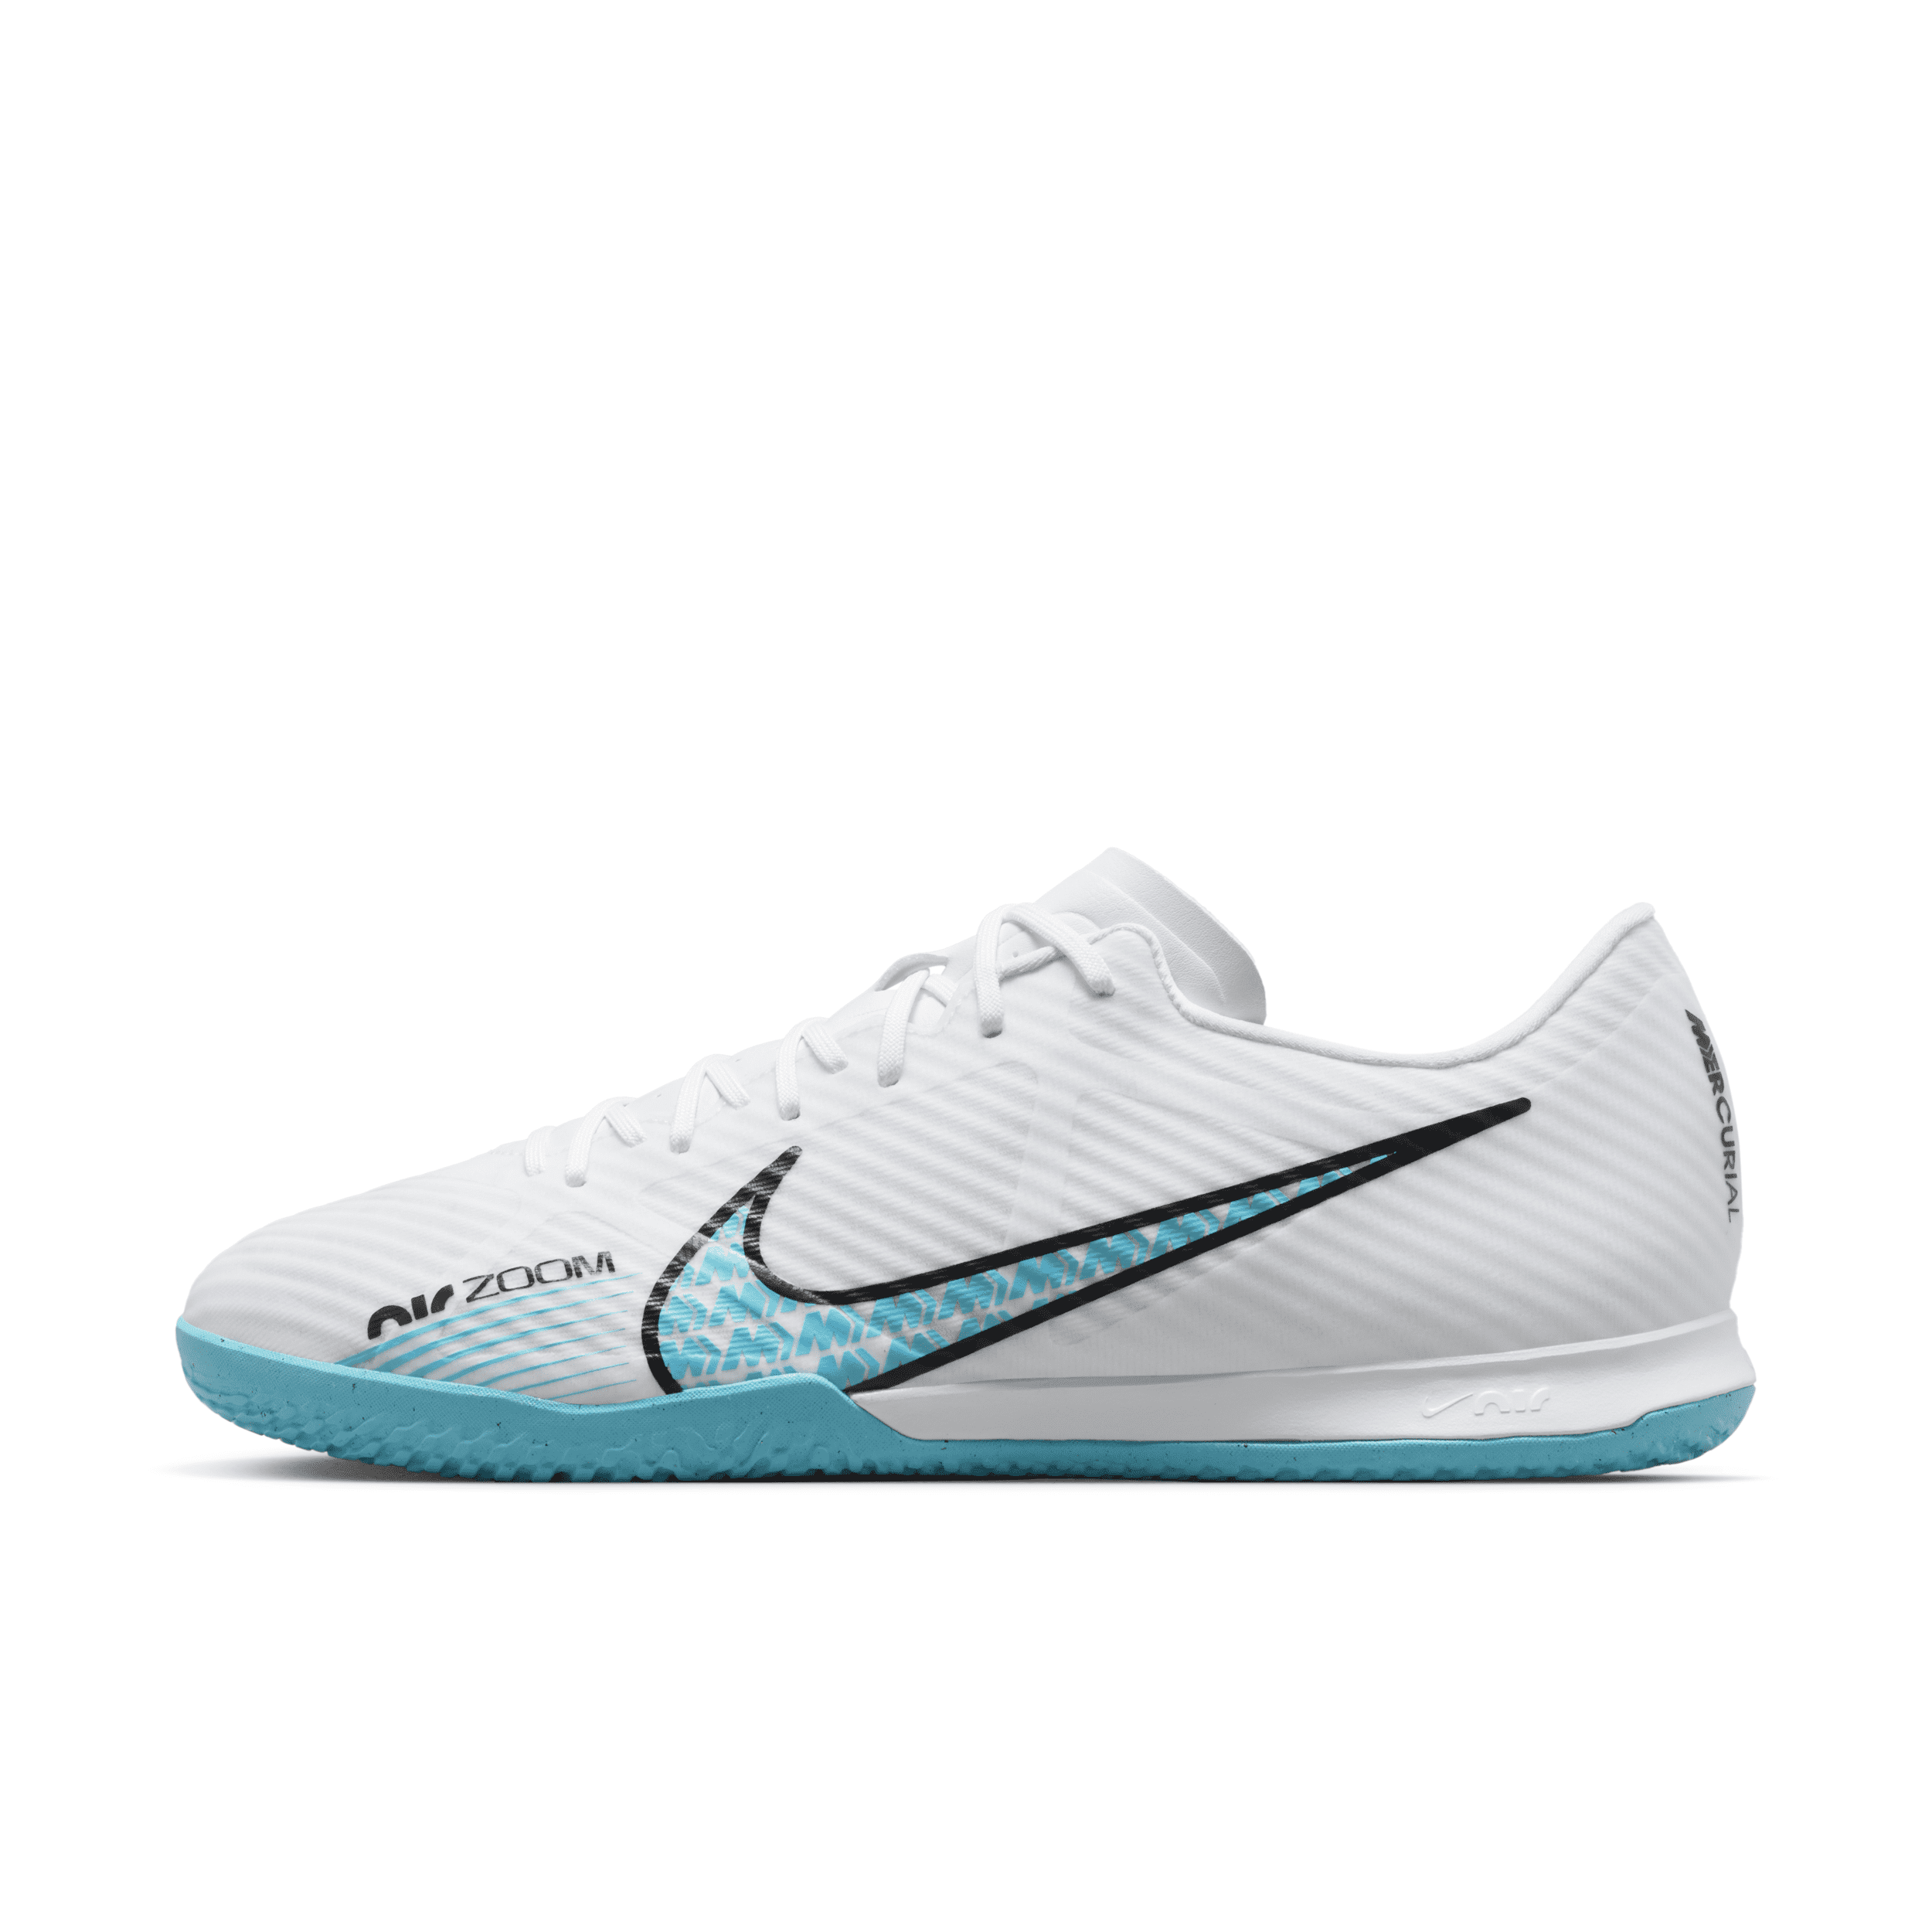 Nike Mercurial Vapor 15 Academy Indoor/Court Soccer Shoes.